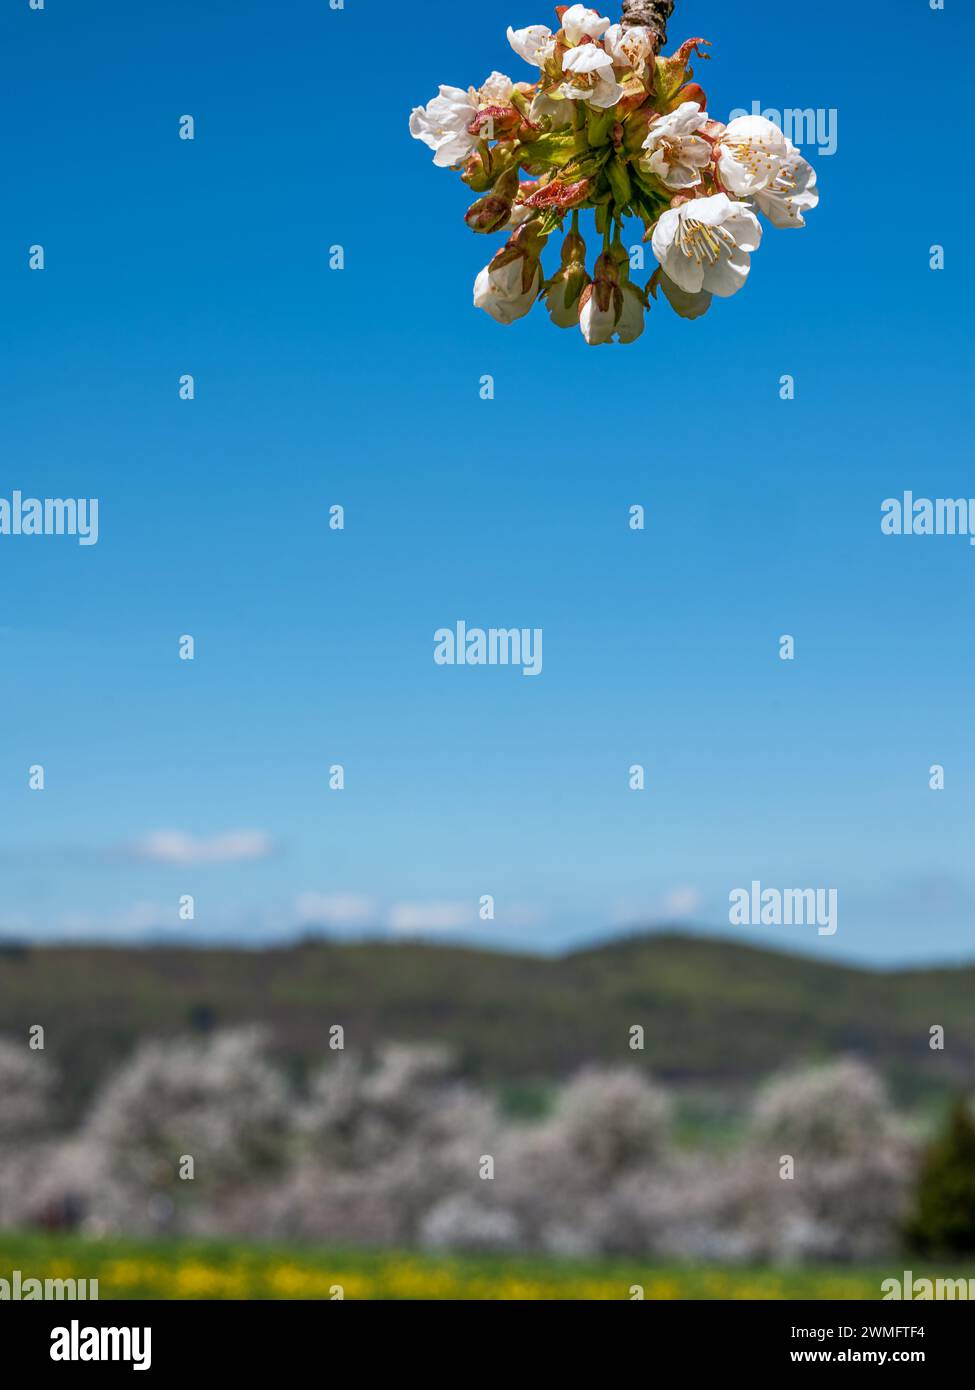 Primo piano di un ramo con fiori di ciliegio di fronte a un paesaggio sfocato con alberi di ciliegio e cielo blu Foto Stock